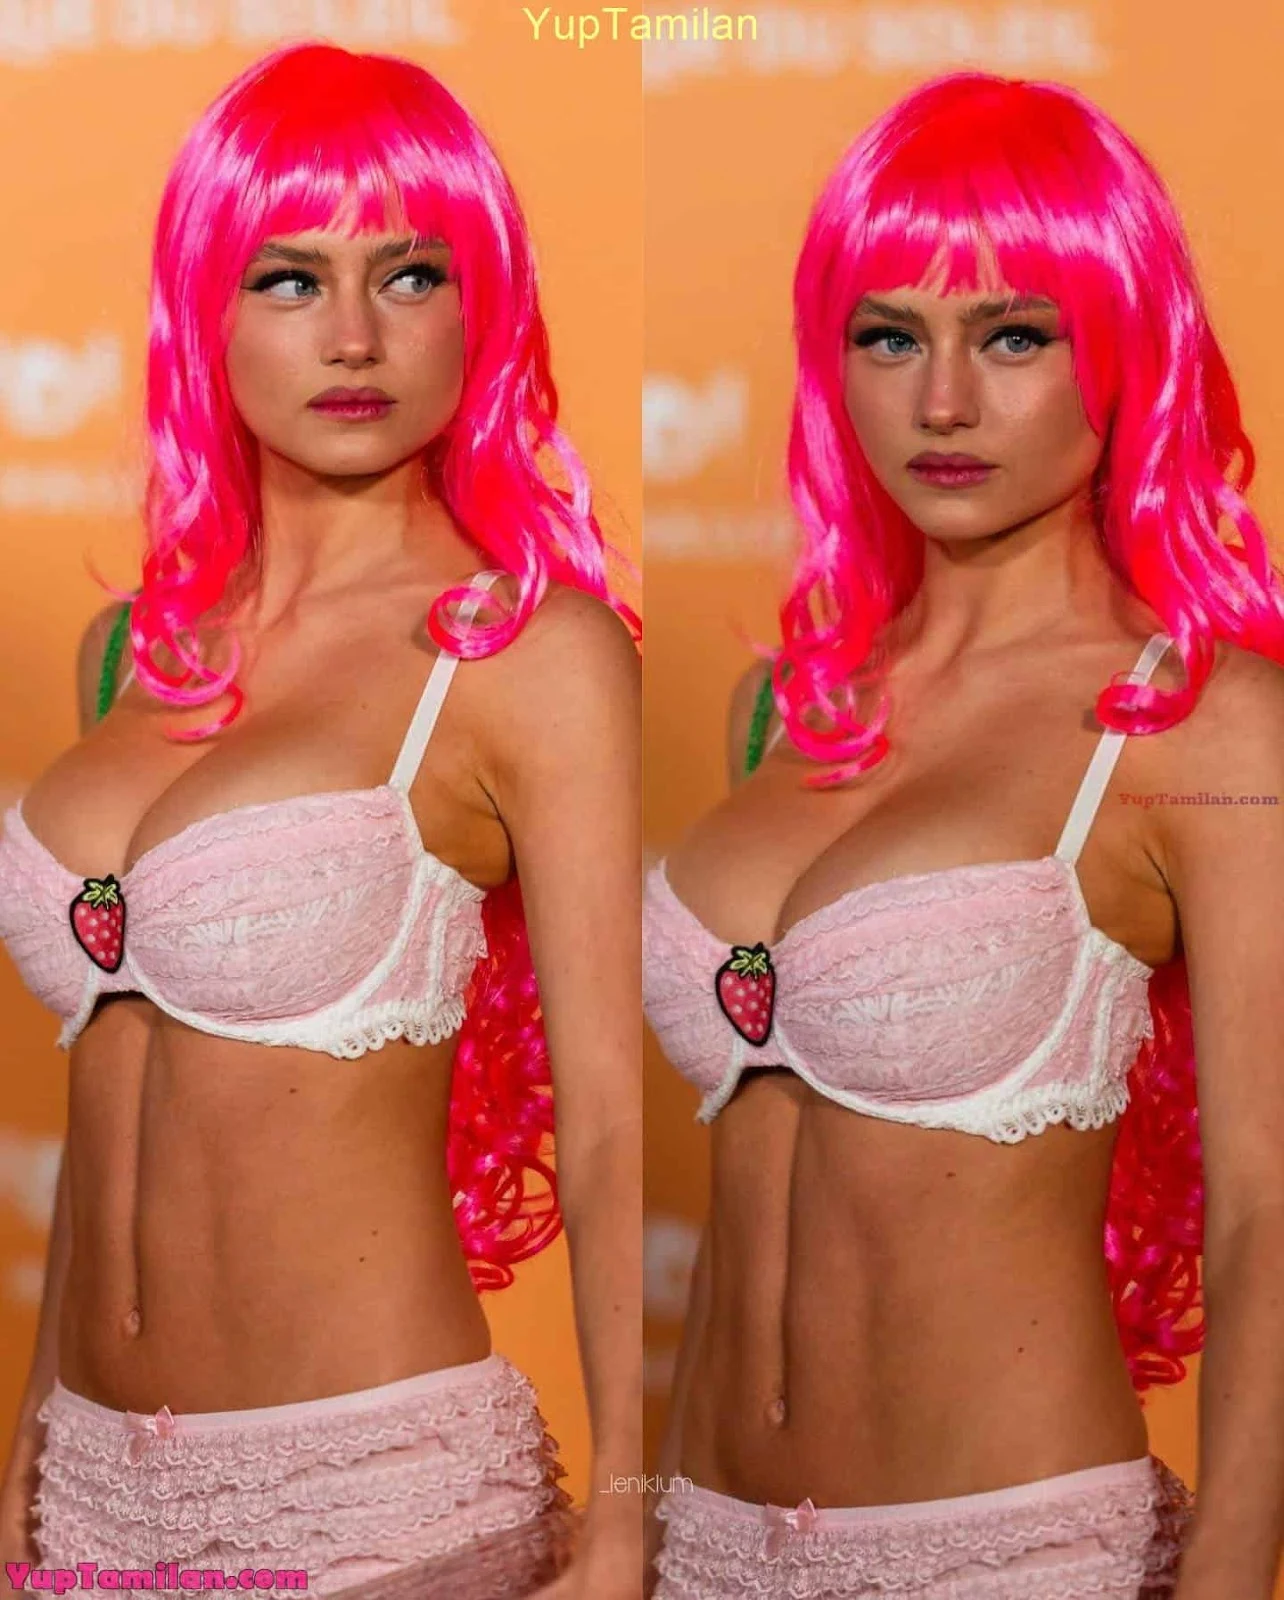 Leni Klum Sexy Bikini Pic Flaunts Hot Curves